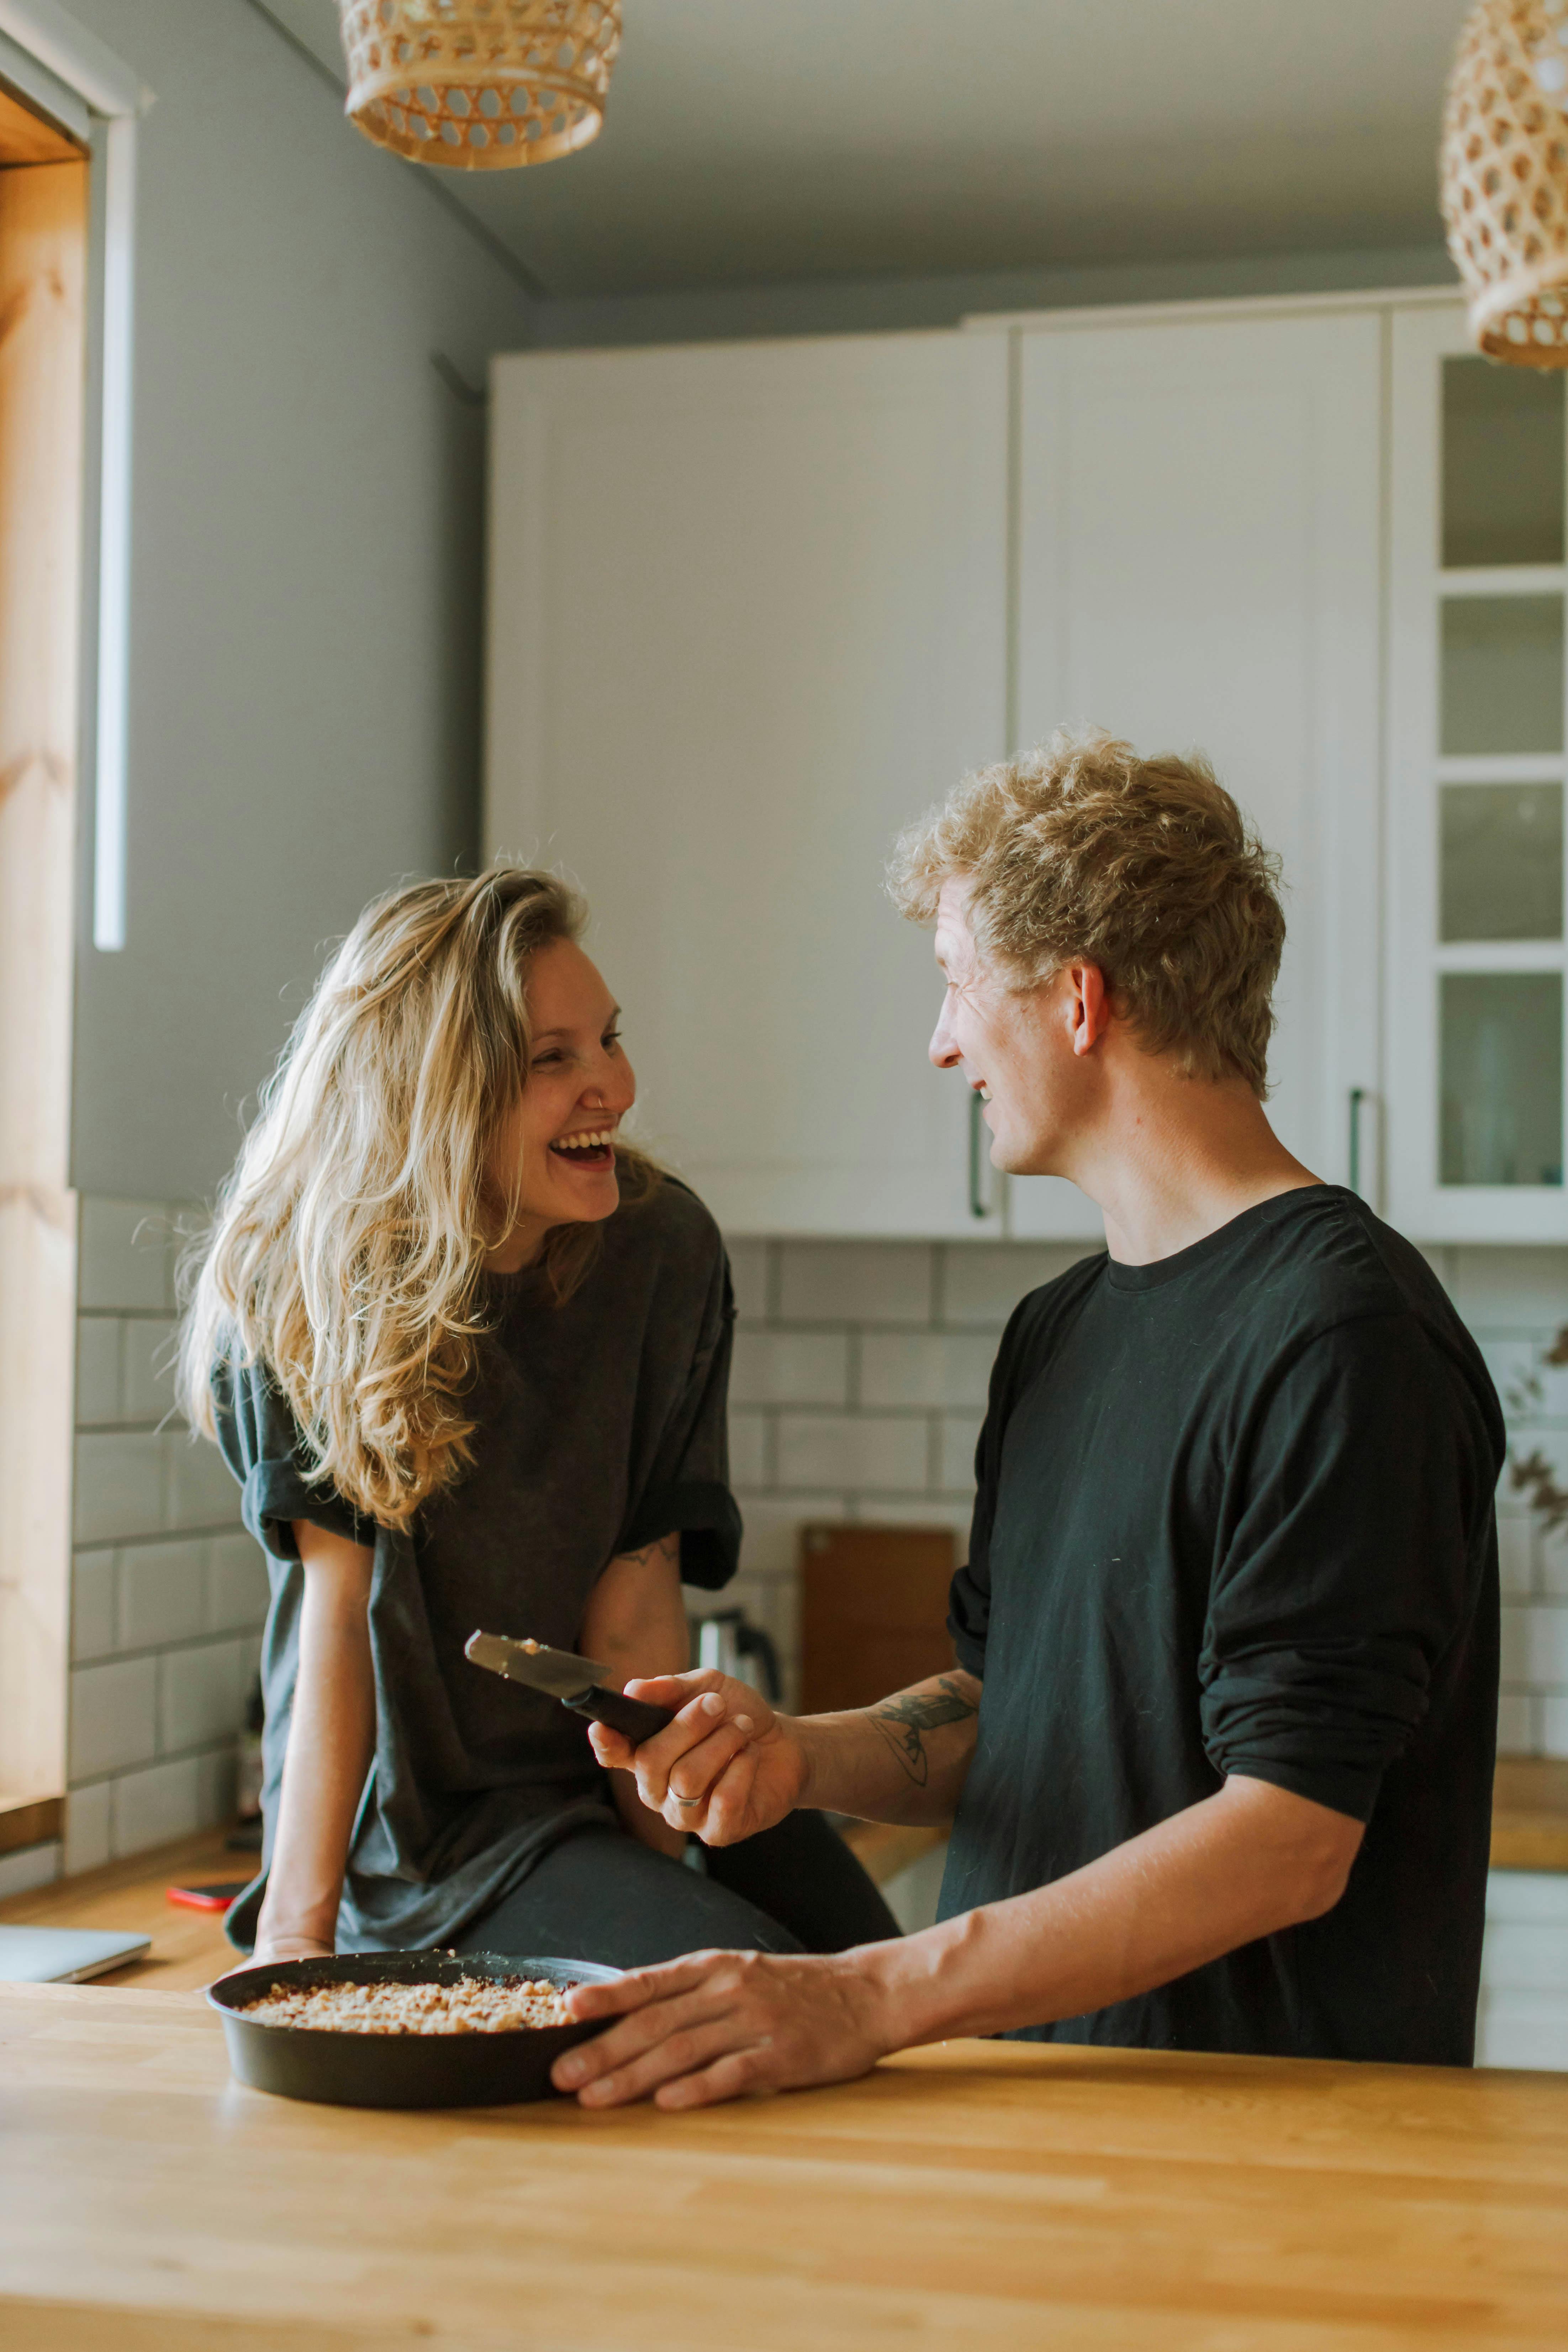 Homme et femme riant en préparant un repas dans la cuisine | Source : Pexels